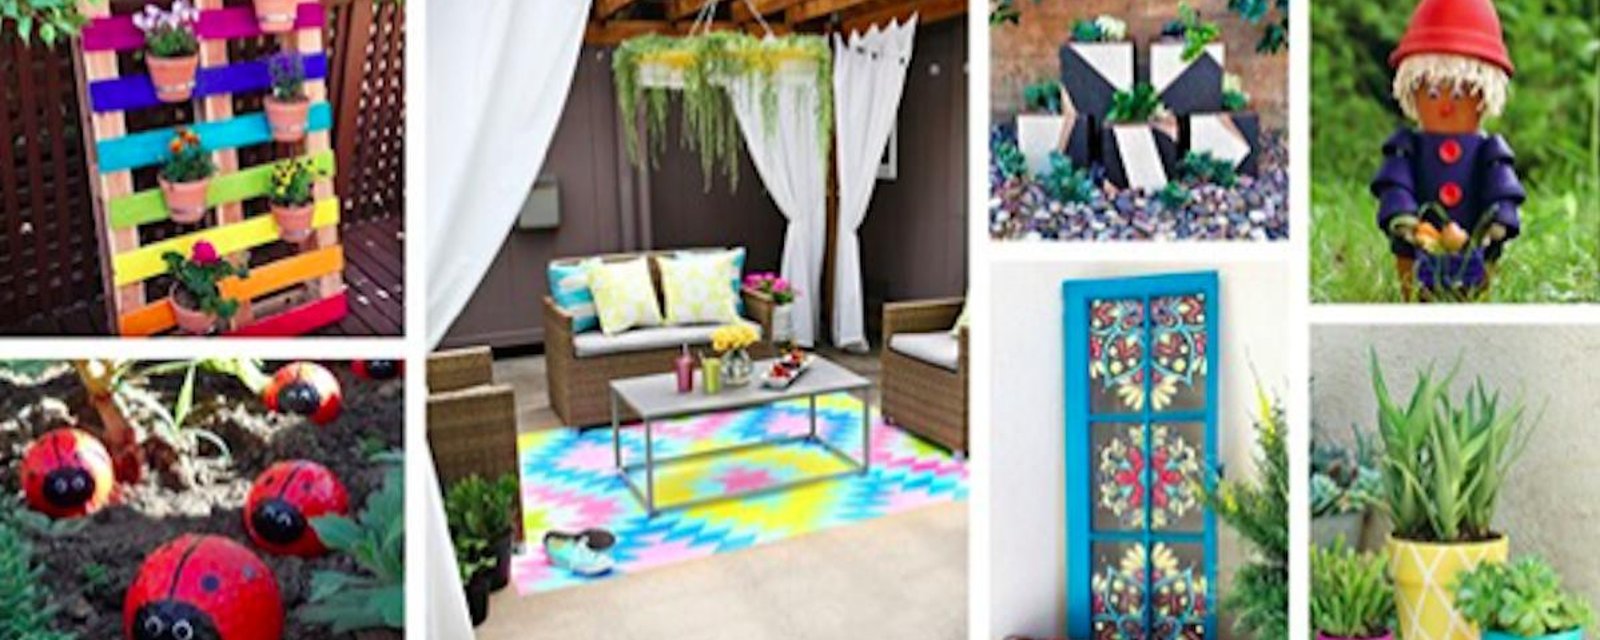 24 projets DIY pour mettre plus de couleurs dans votre cour!